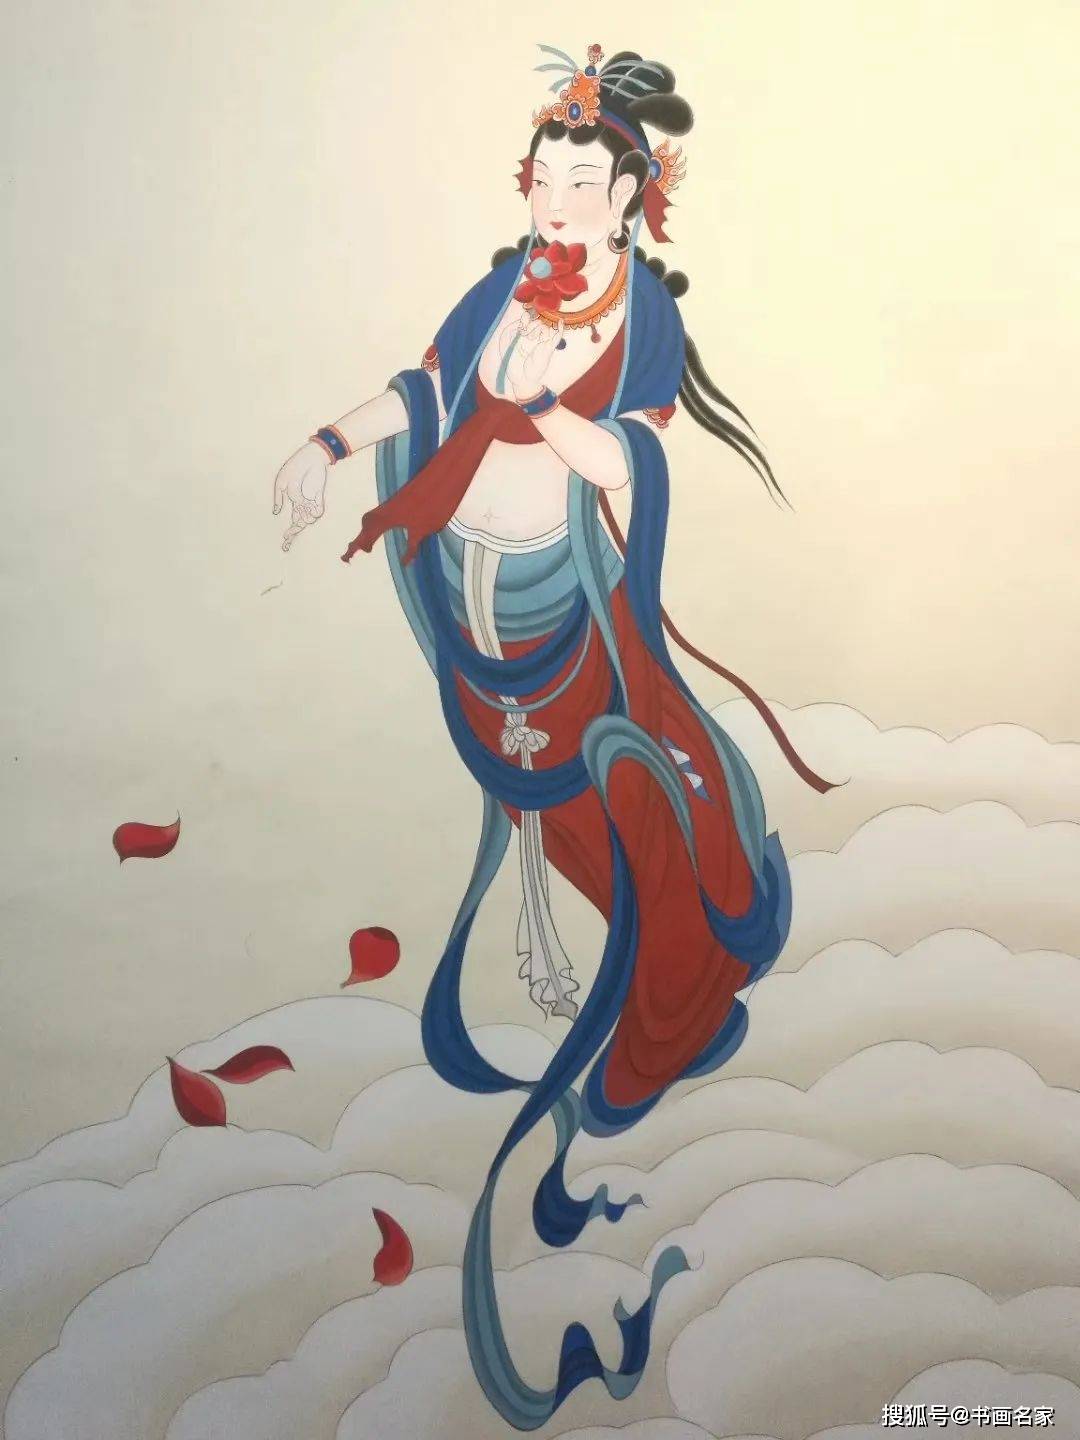 原创艺术中国陈乾德的敦煌壁画